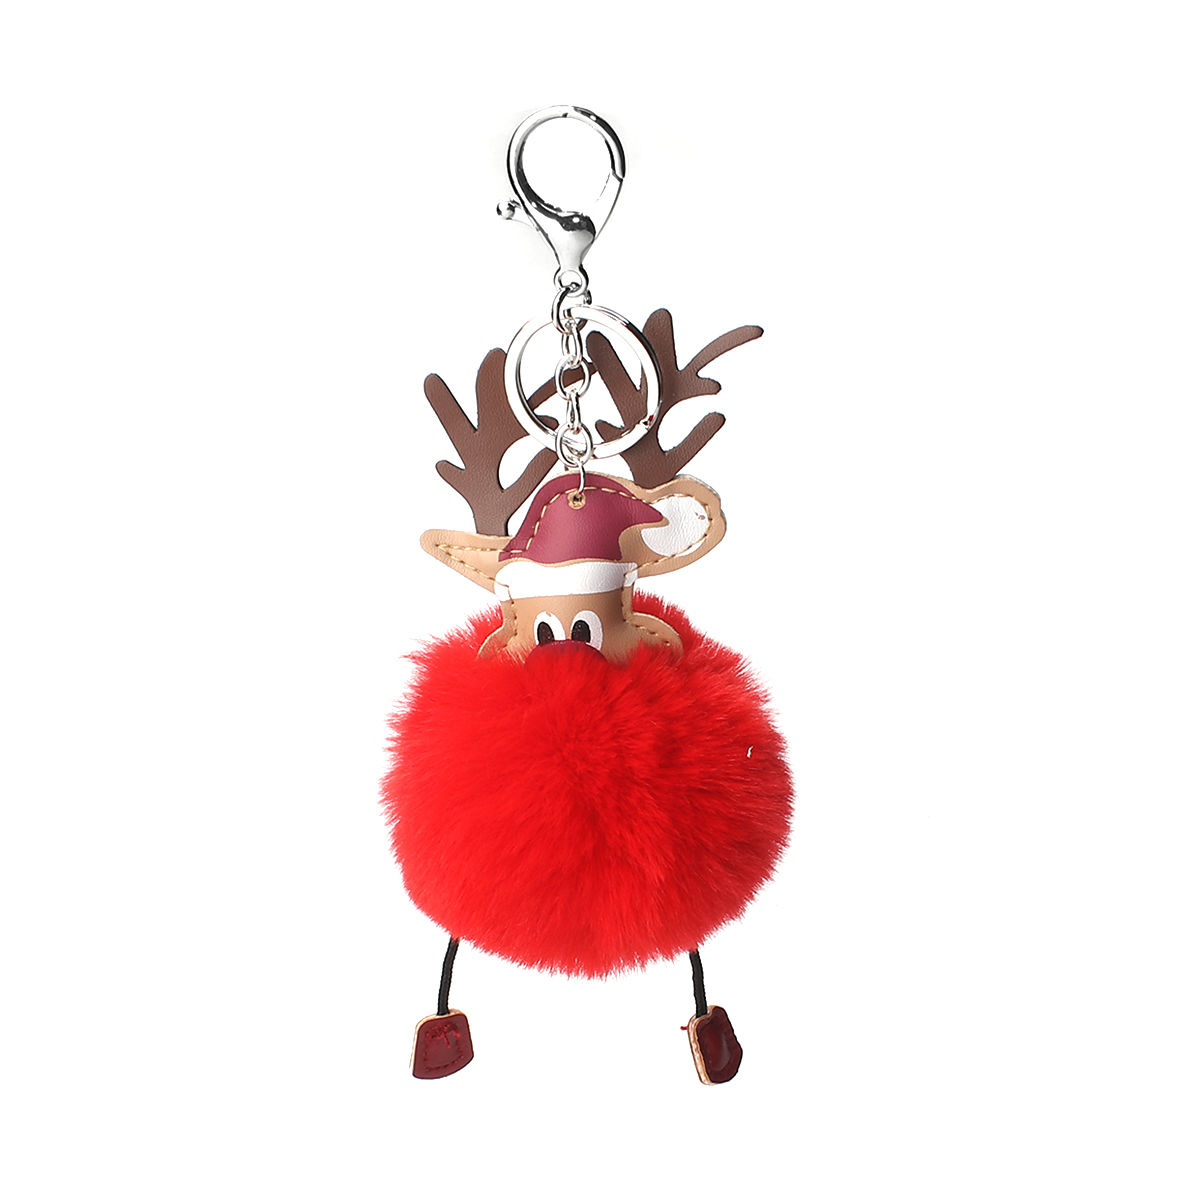 Bild von Plüsch Schlüsselkette & Schlüsselring Pompom Ball Silberfarbe Rot Weihnachten Weihnachtsmann 19cm x 8cm, 1 Stück